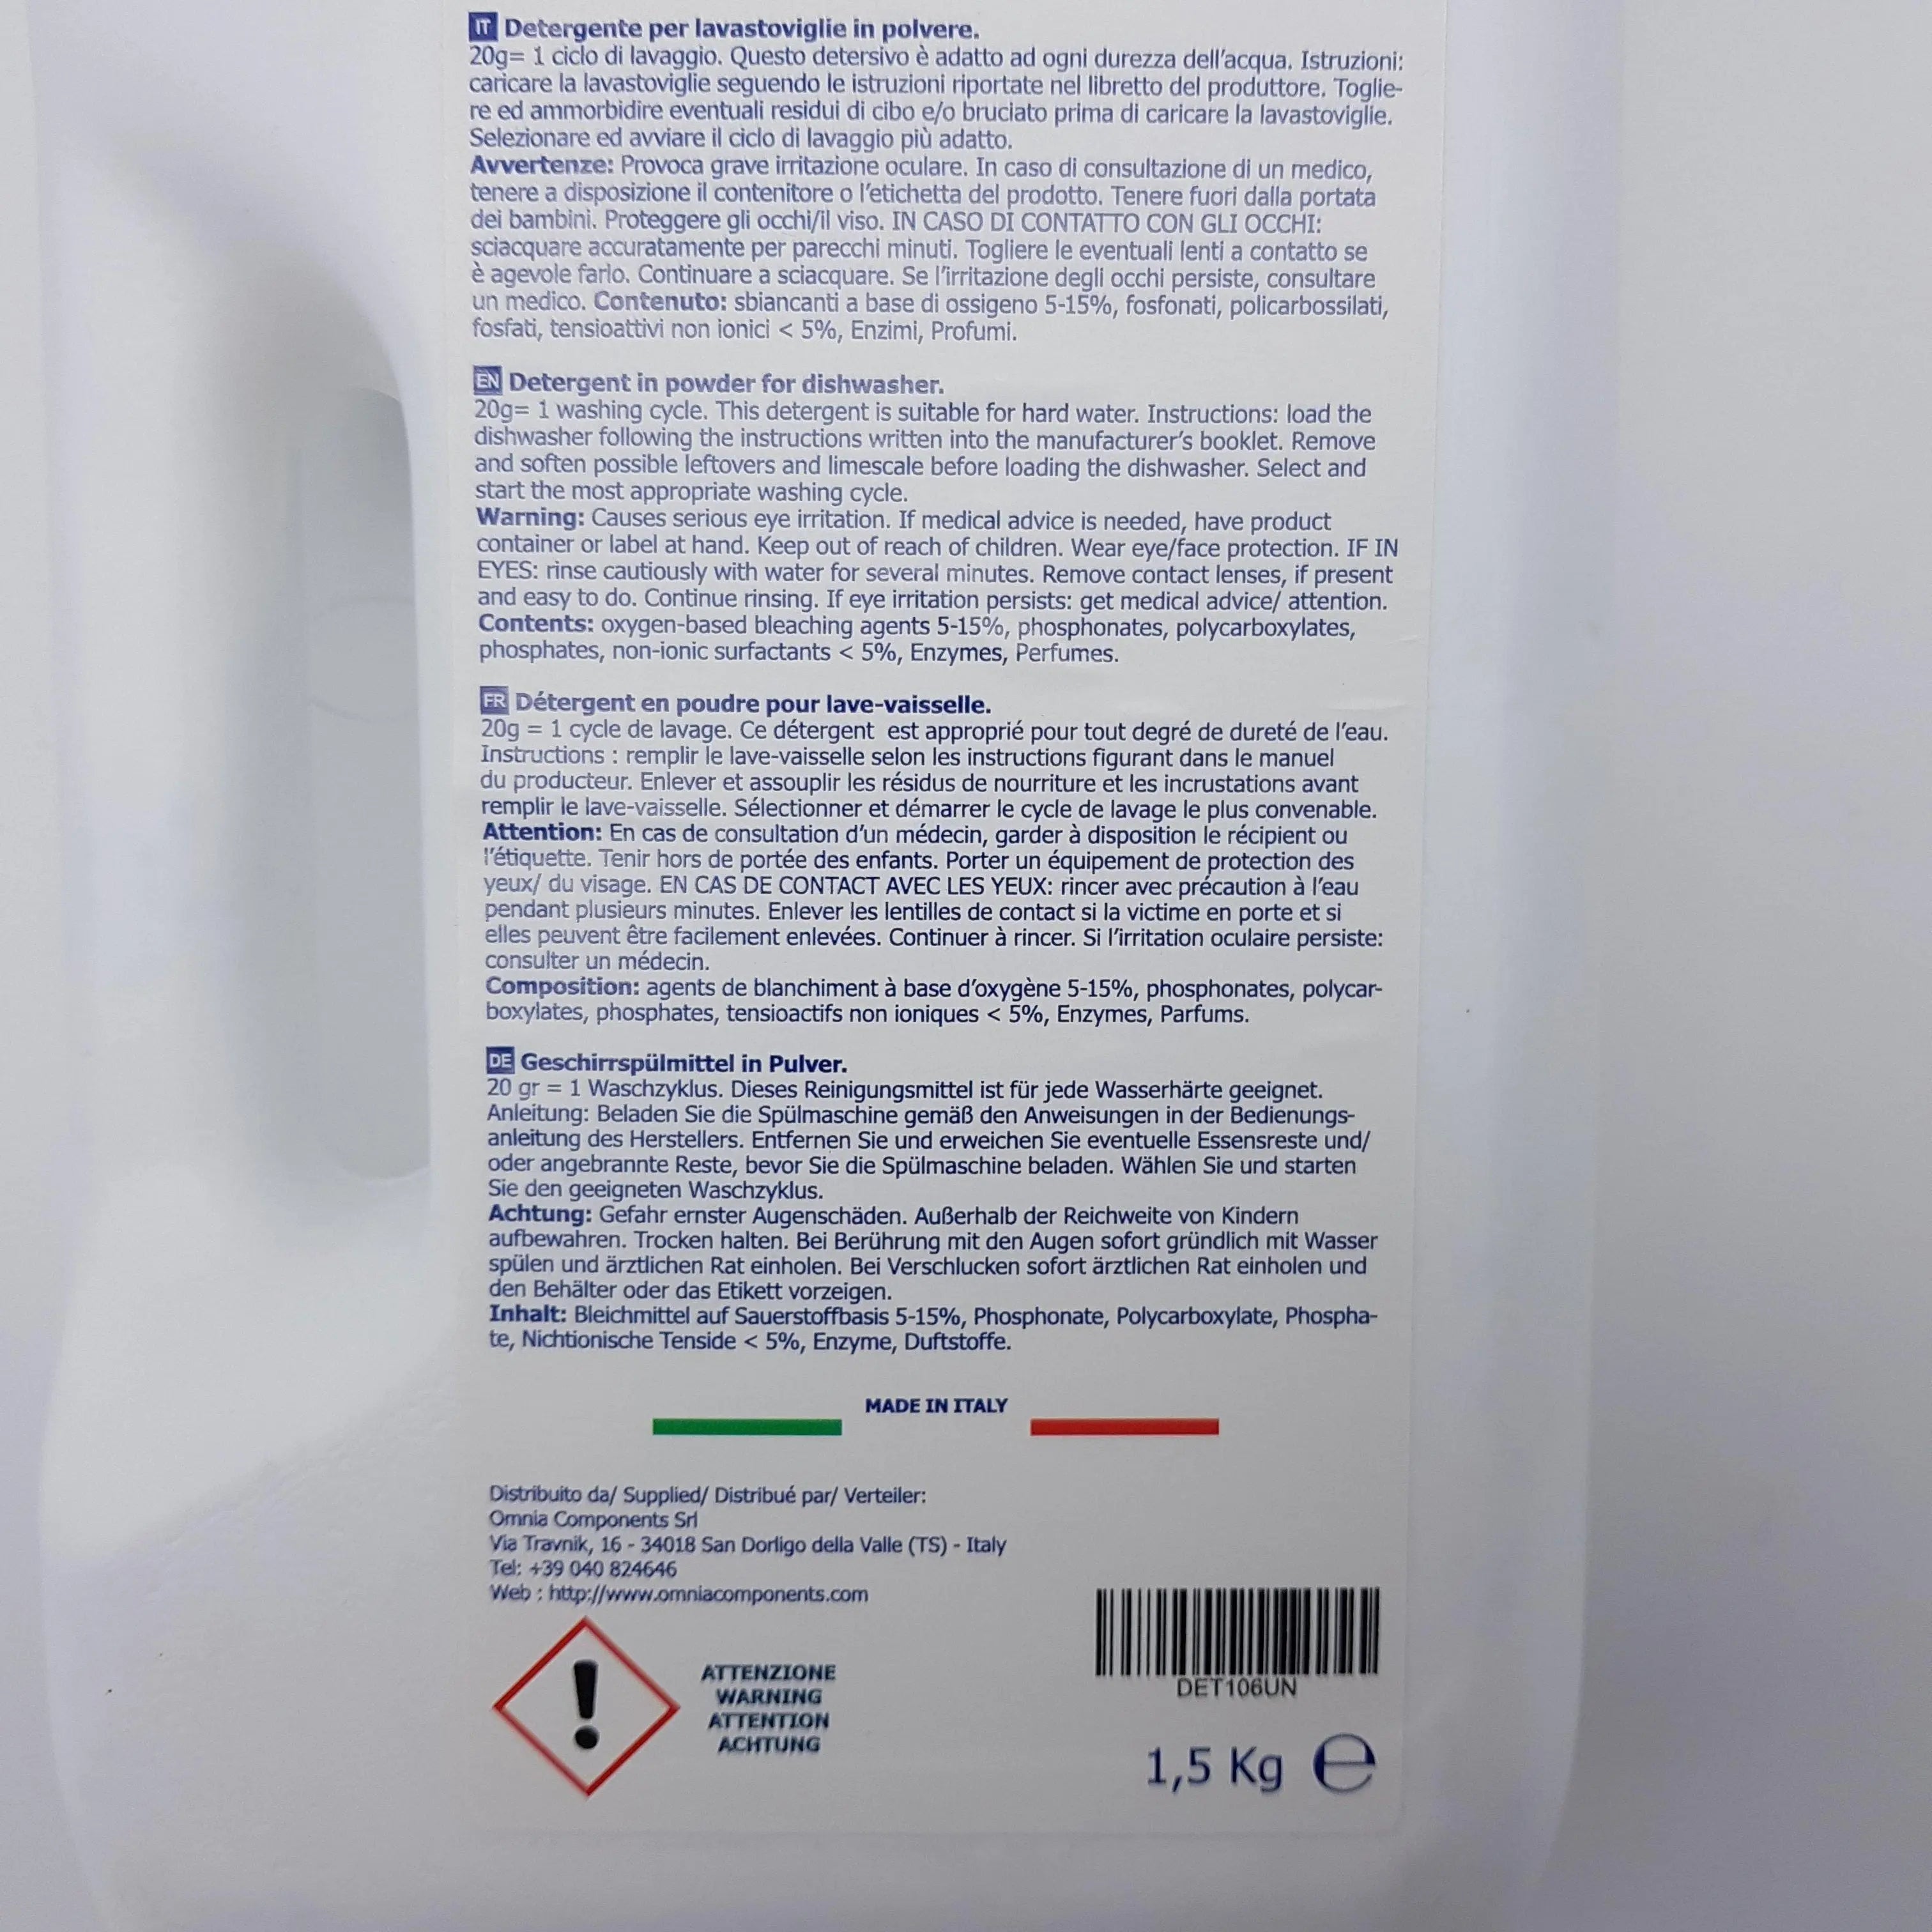 Detersivo lavastoviglie polvere 1.5 kg SKL SKL